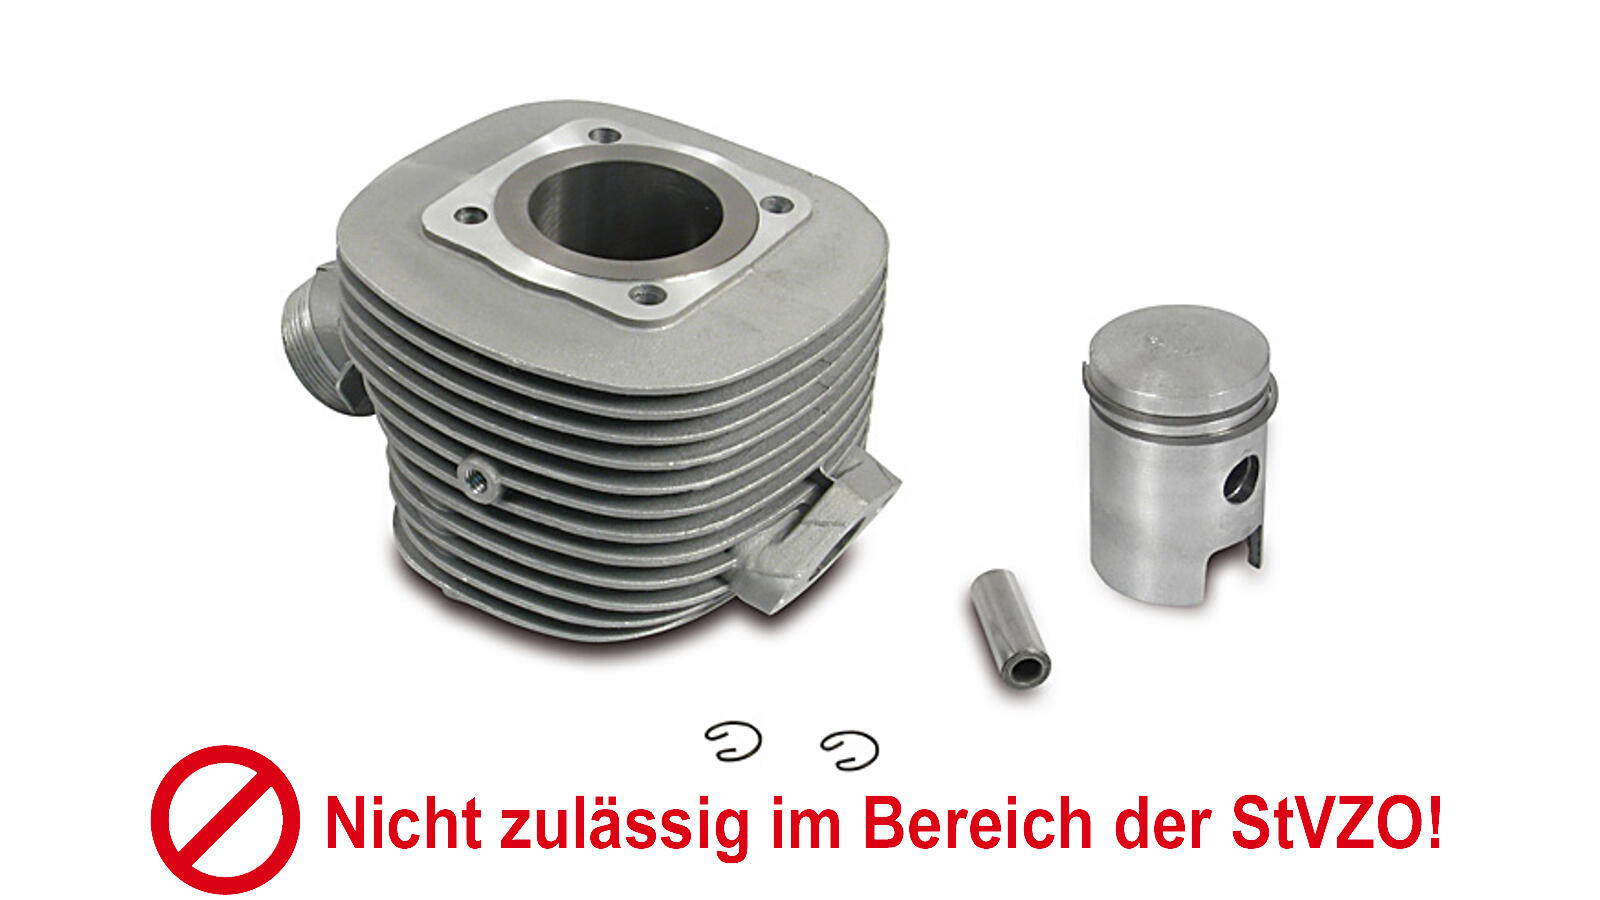 Zylinder + Kolben 63ccm (Almot) für Simson KR51/1, SR4-2,-4, 102,00 €